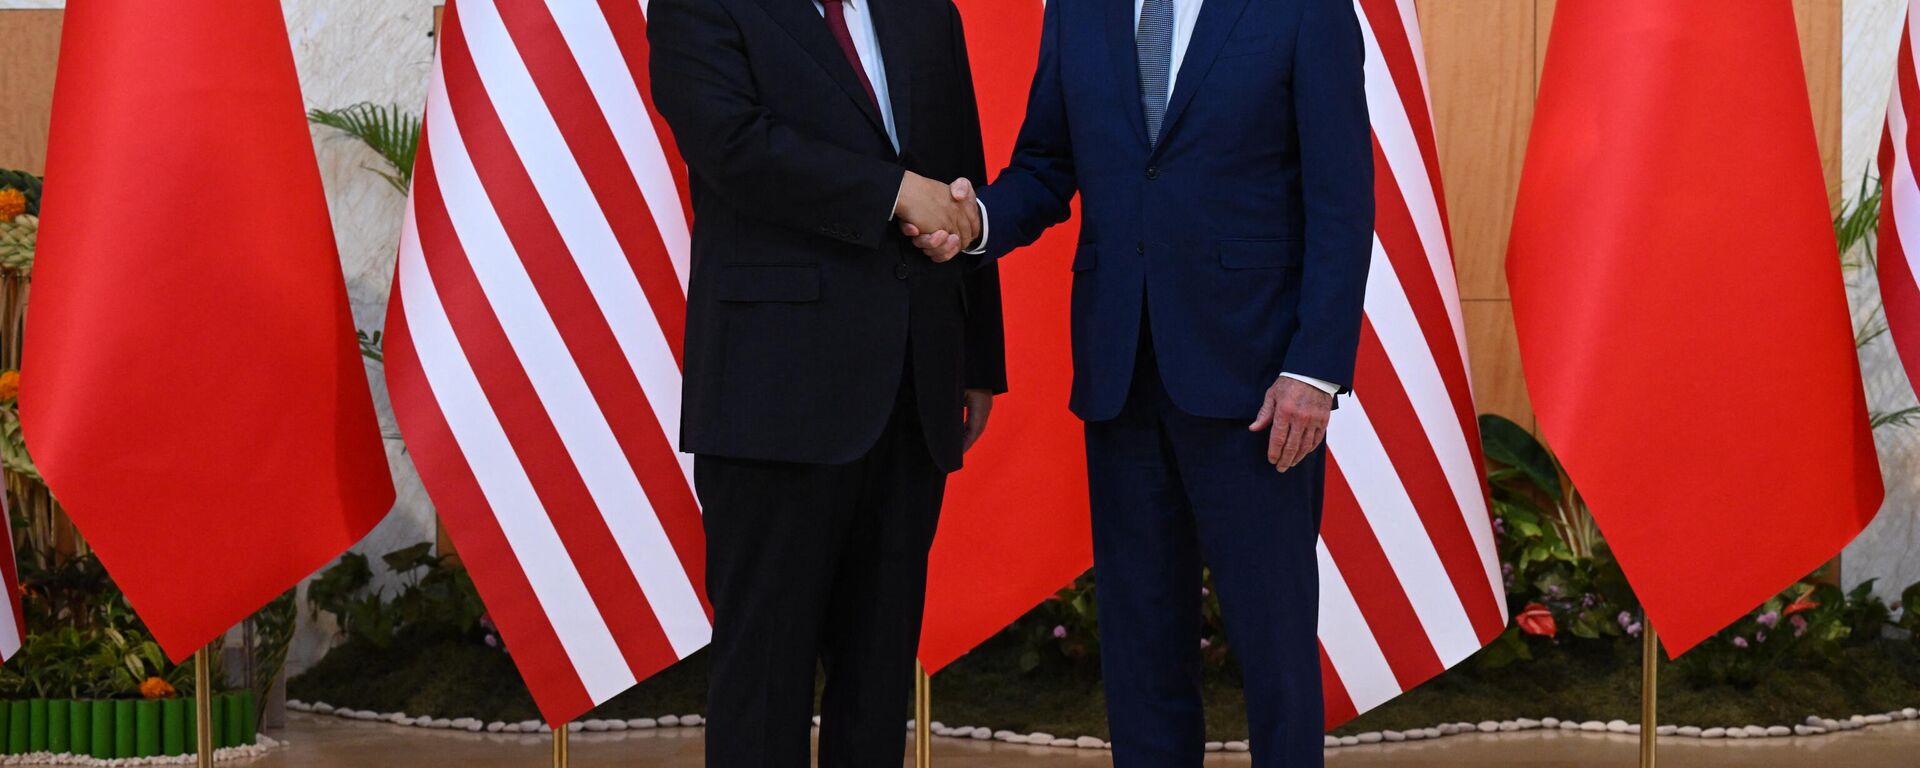 XI Jinping (à esquerda) e Joe Biden (à direita), presidentes da China e dos EUA, respetivamente, se encontram à margem da cúpula do G20 em Bali, Indonésia, 14 de novembro de 2022 - Sputnik Brasil, 1920, 14.11.2022